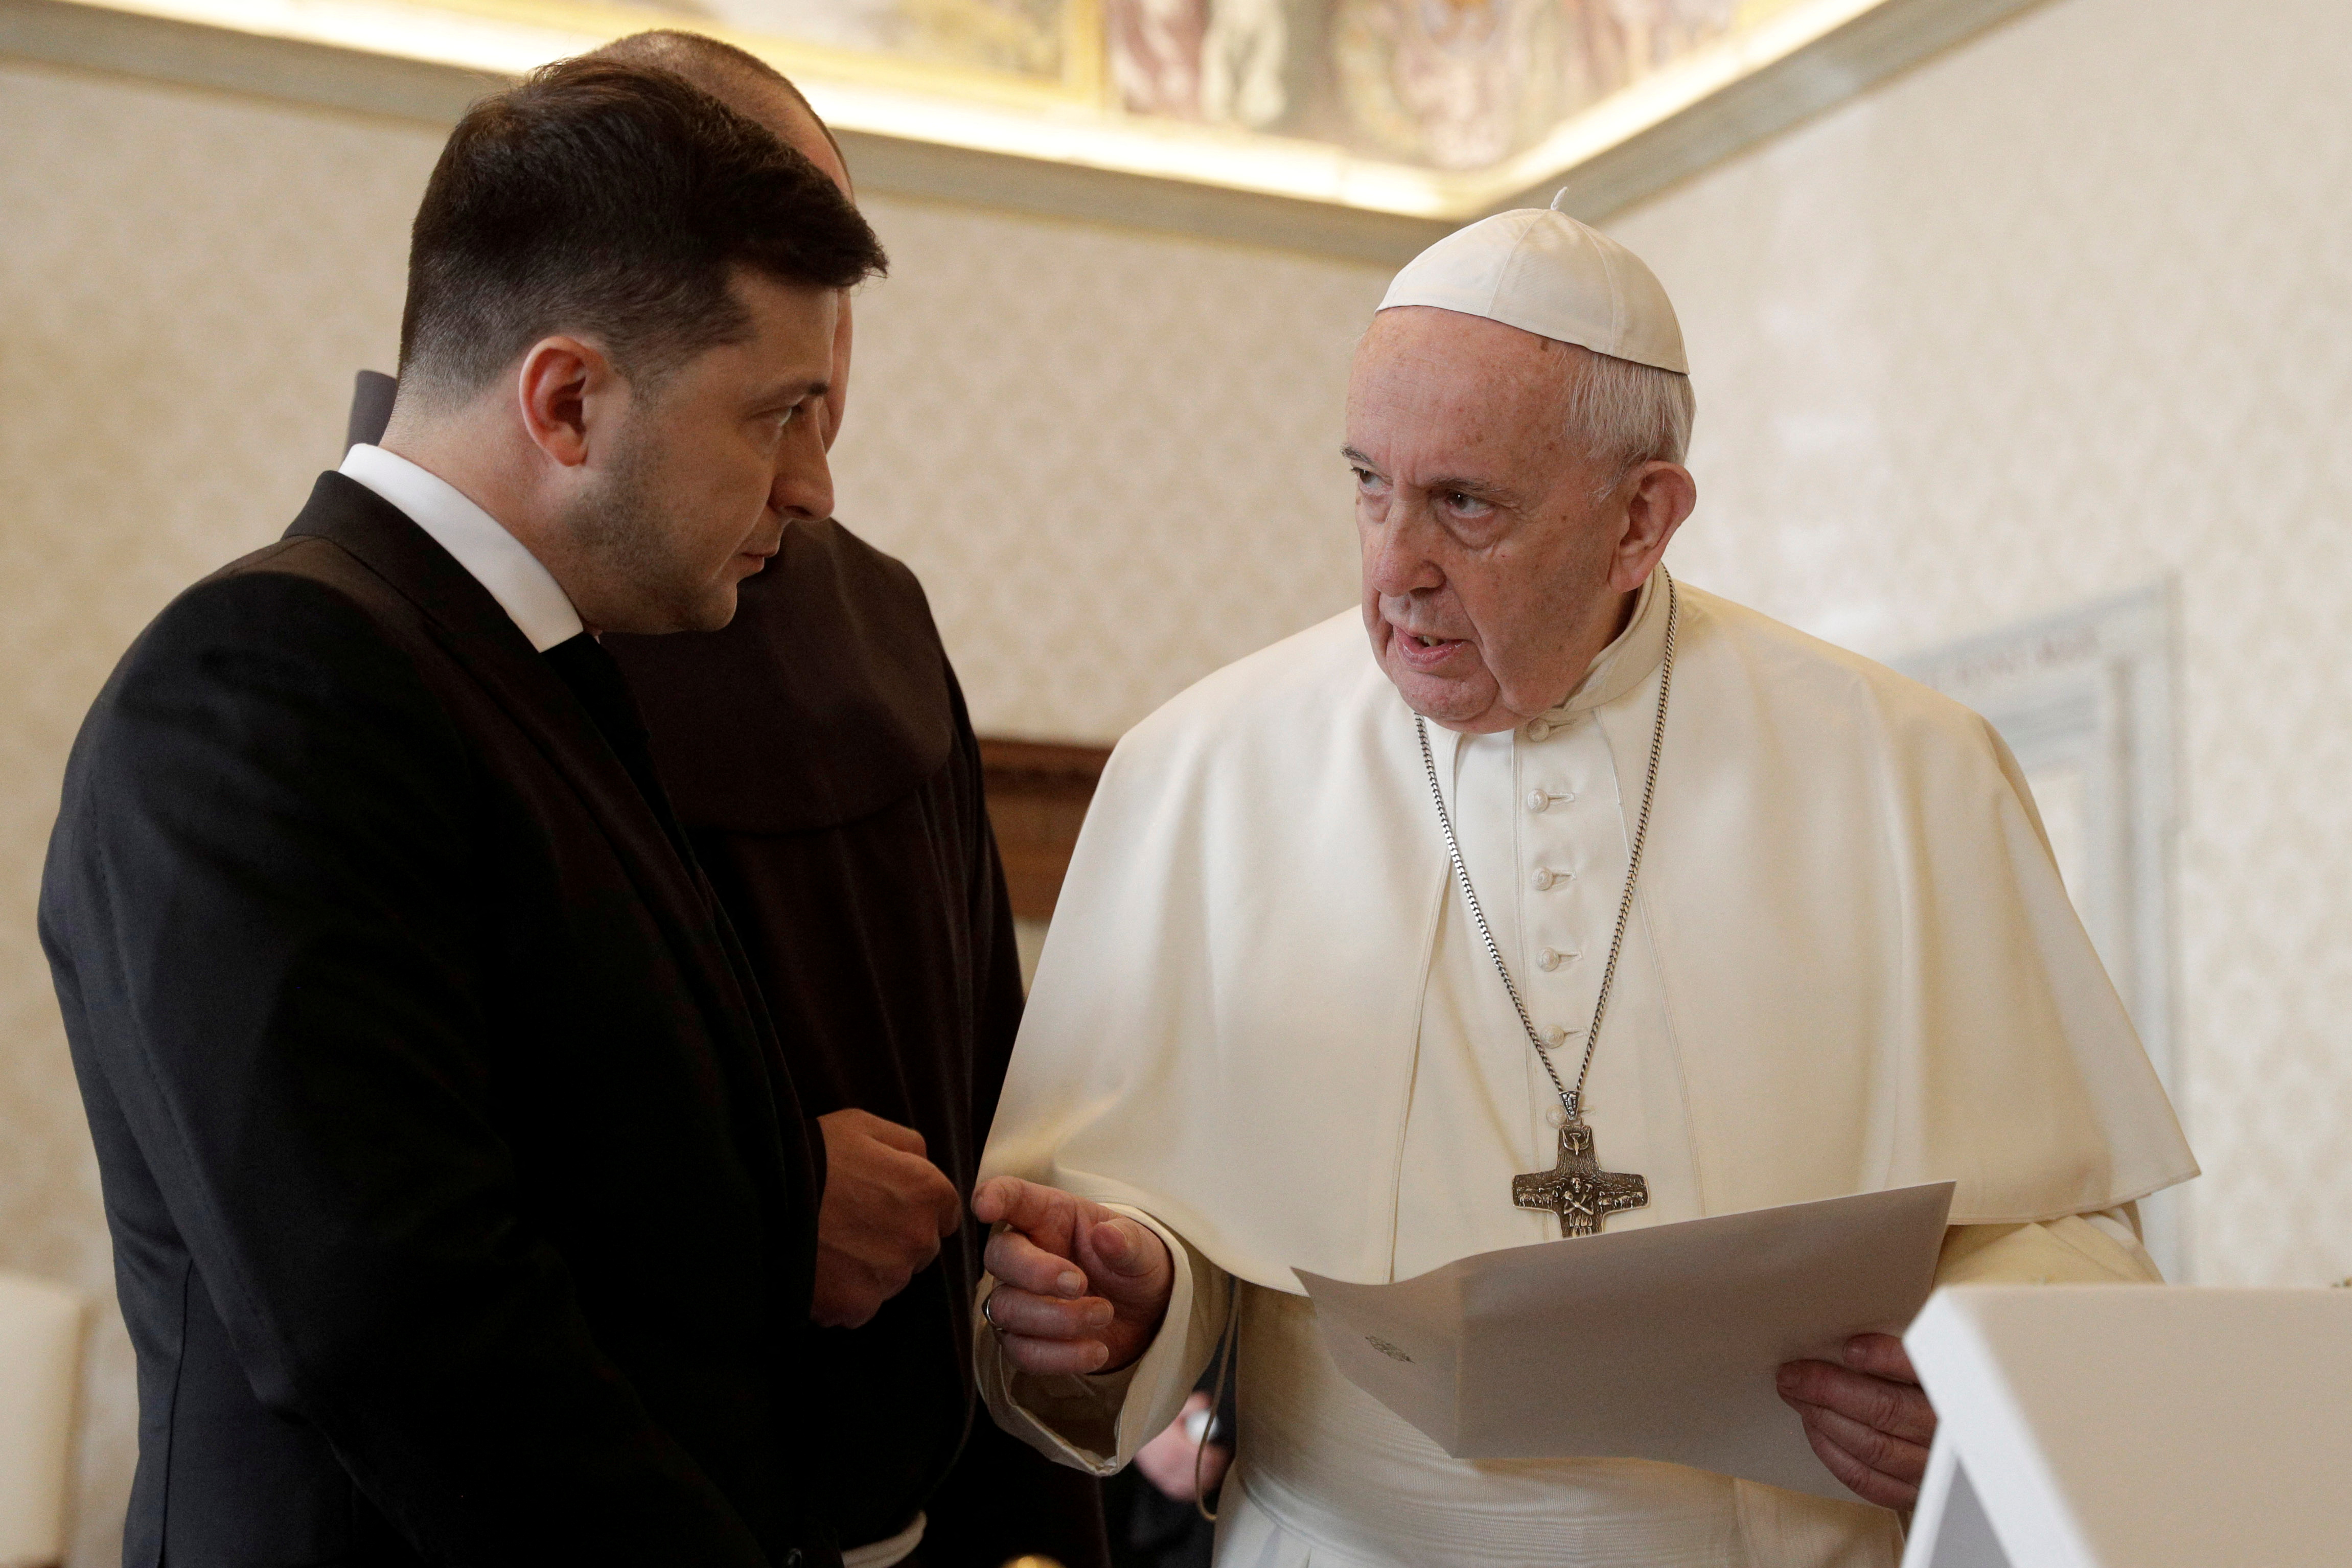 El encuentro previo del papa Francisco con Zelensky, en febrero de 2020 (Gregorio Borgia/Pool via REUTERS/Archivo)